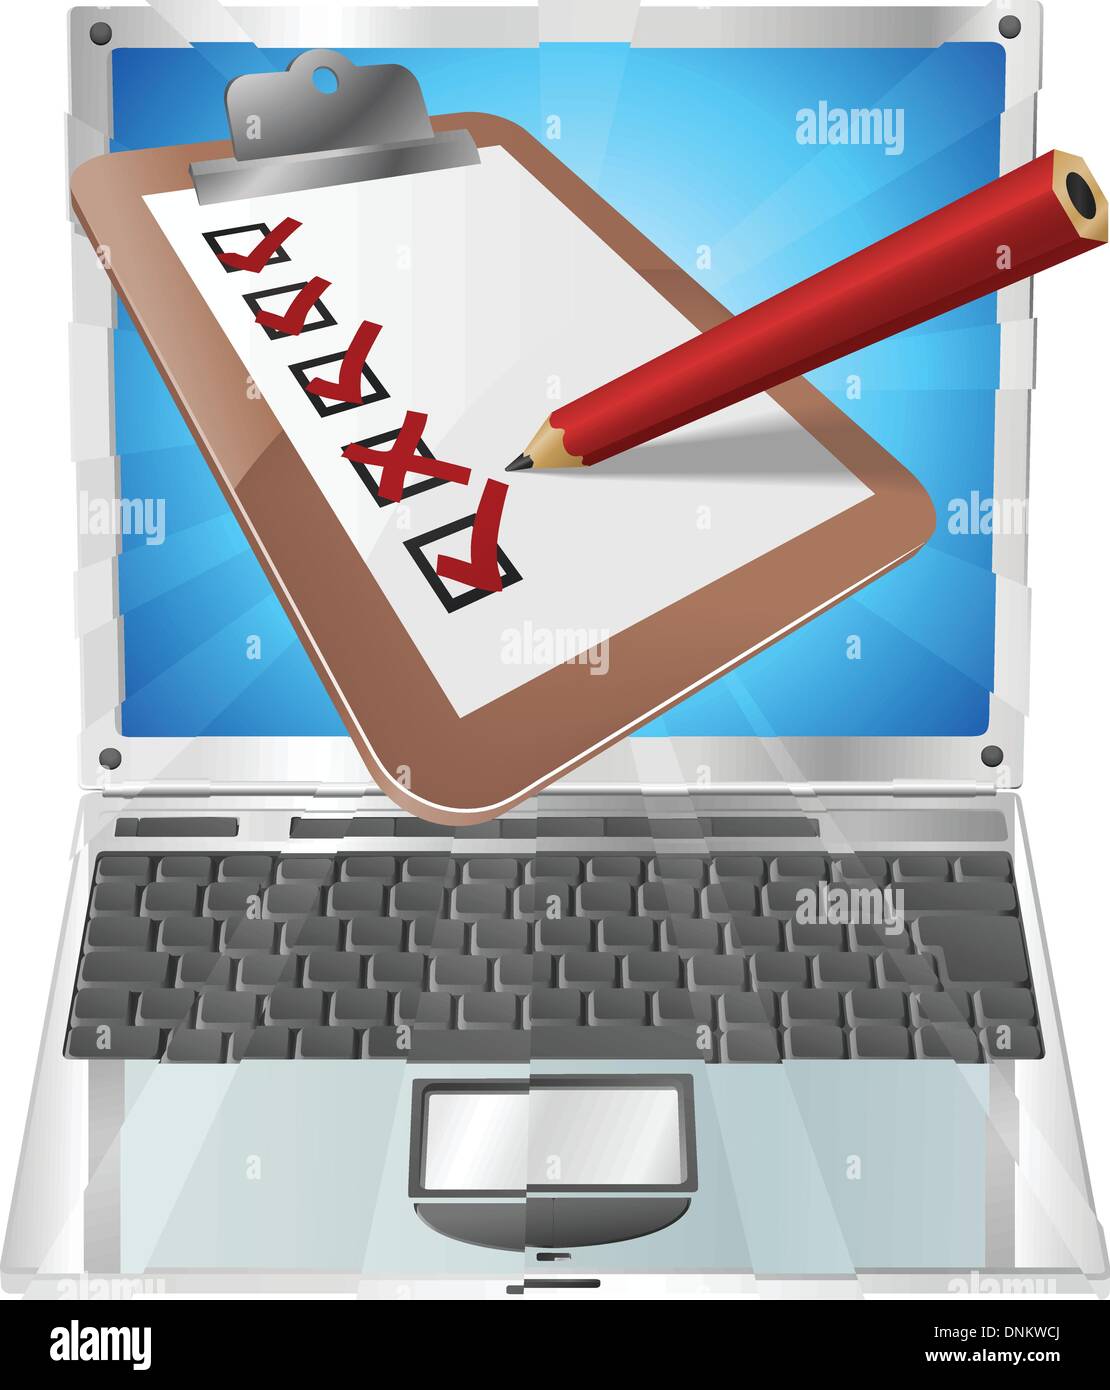 Eine Illustration der Zwischenablage mit Bleistift markieren auf Laptop-Bildschirm aus. Vielleicht eine Online-Umfrage, Umfrage, o Stock Vektor